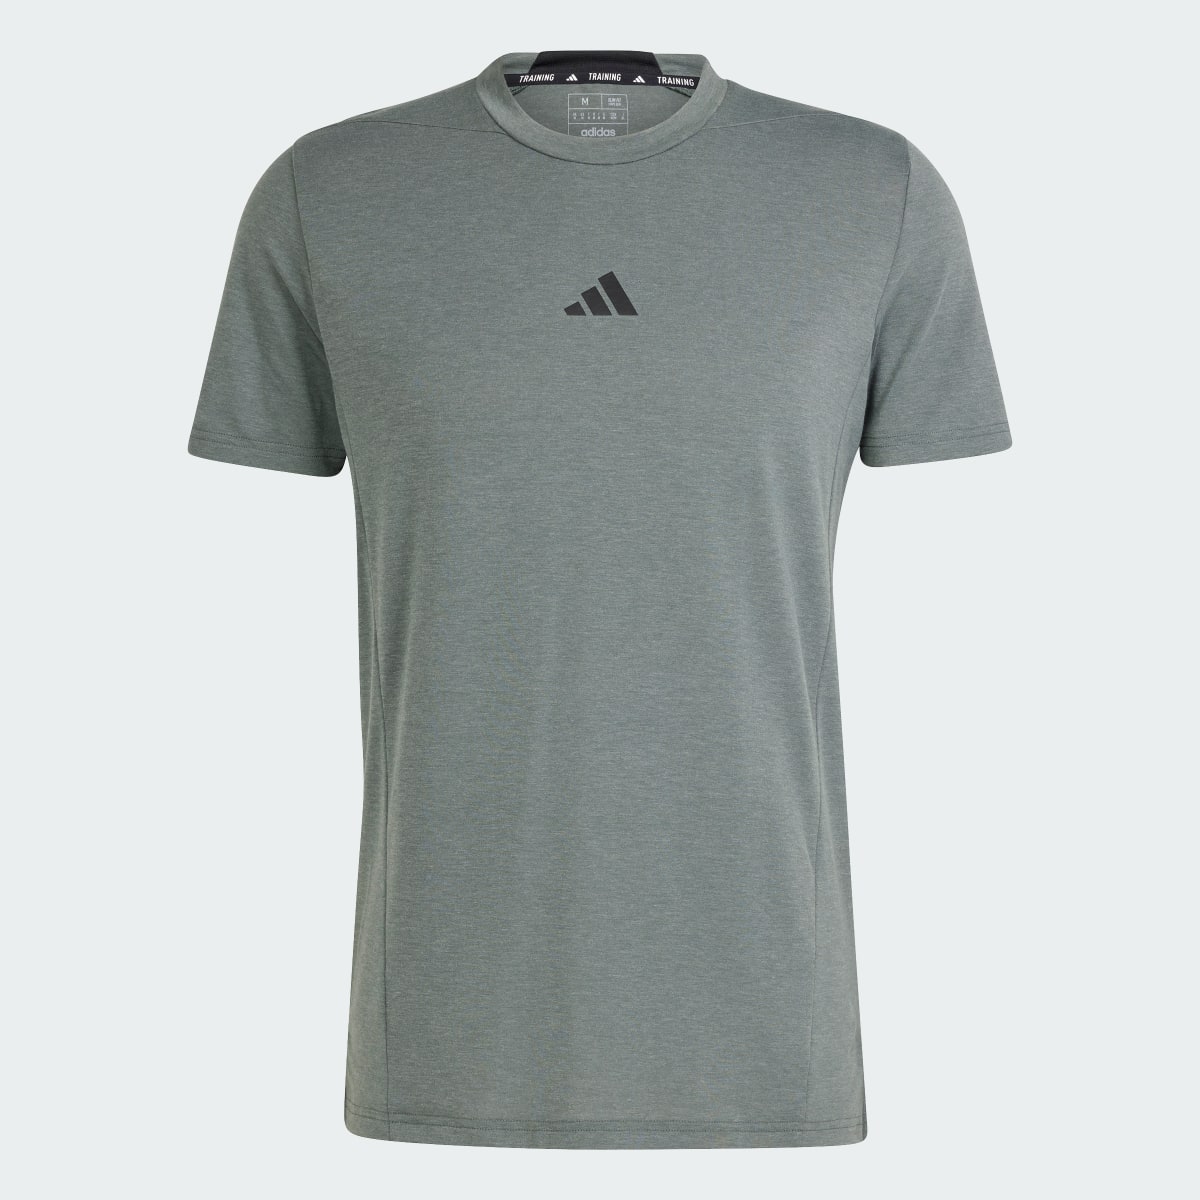 Adidas Designed for Training Antrenman Tişörtü. 5